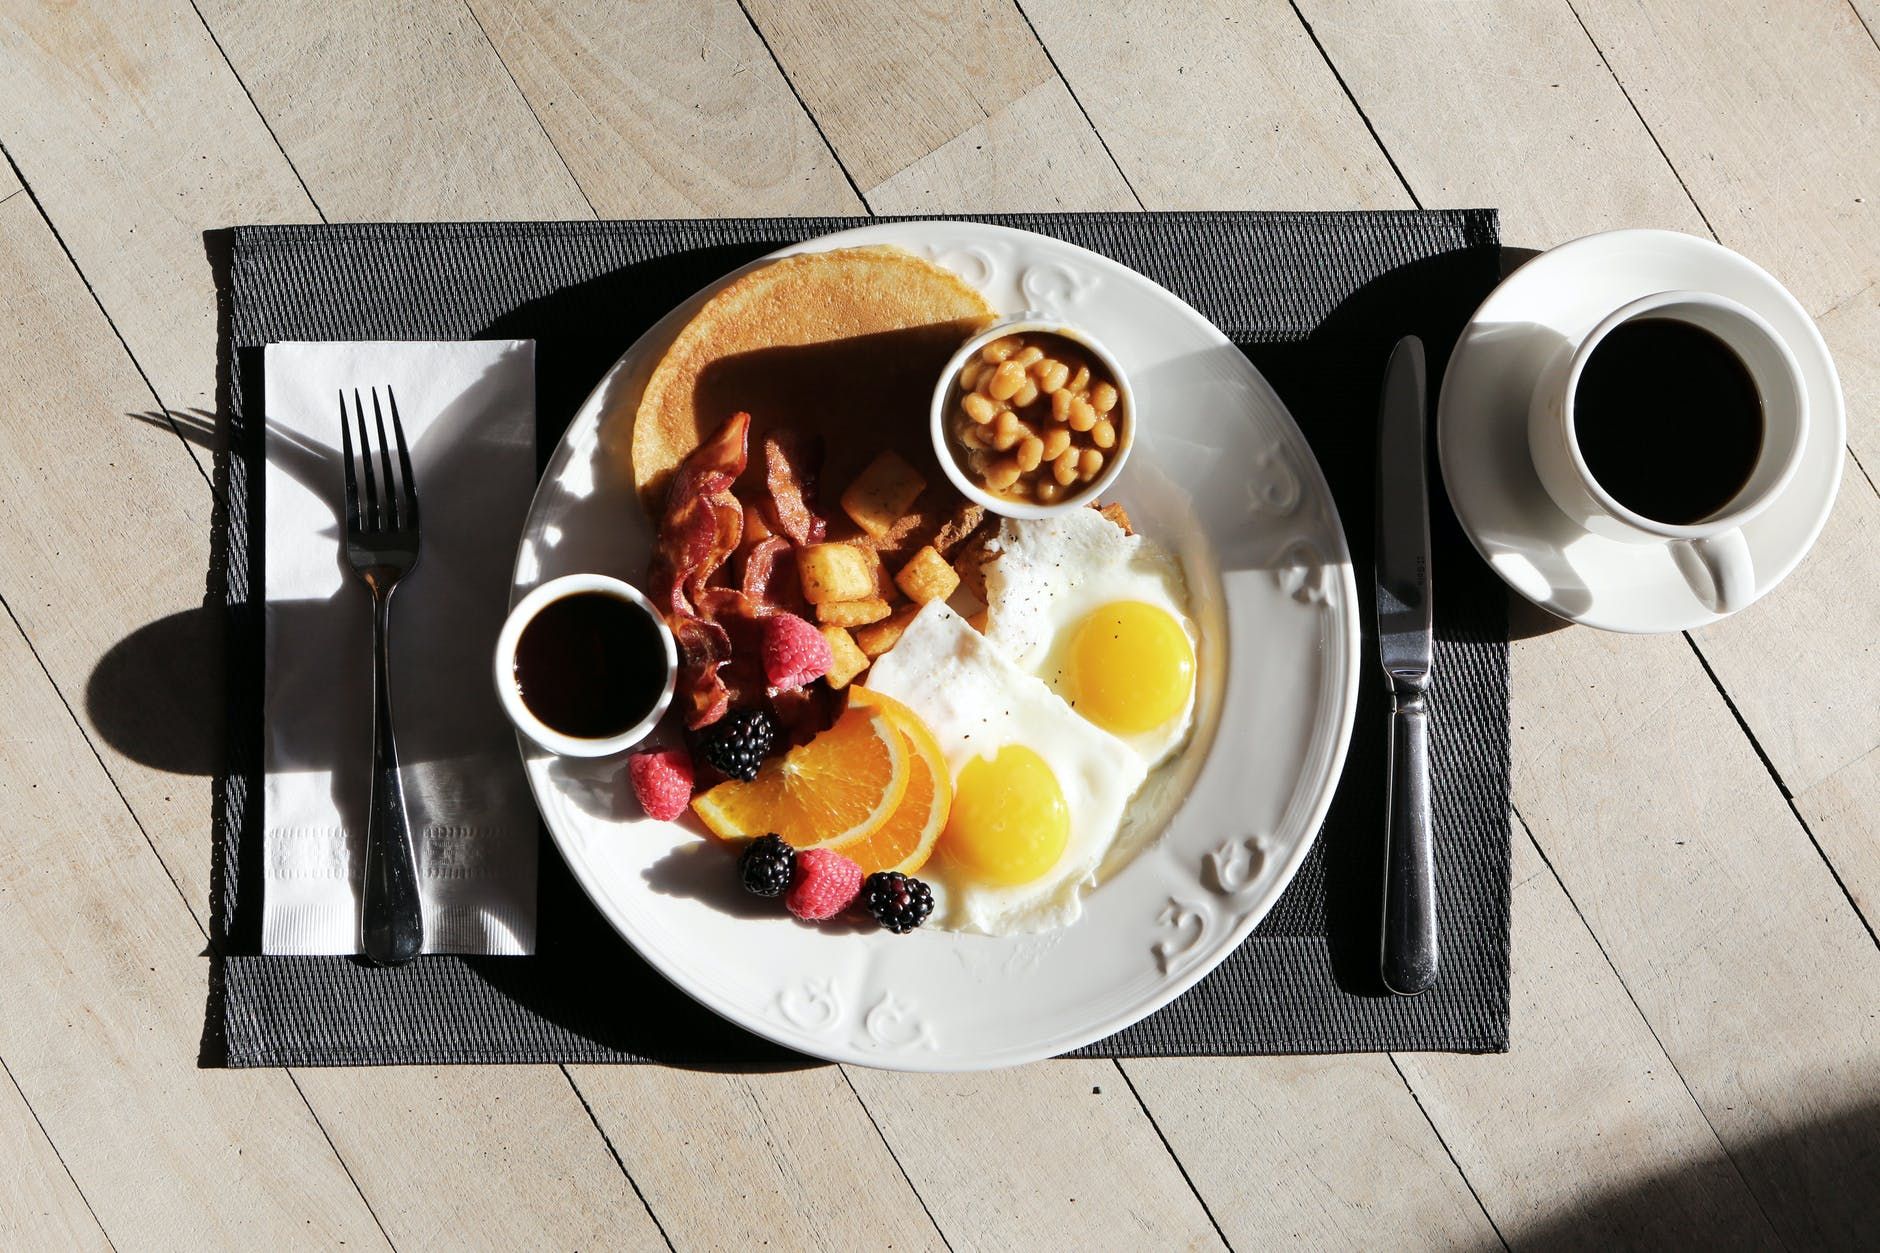 Что случится с организмом, если ежедневно есть только завтрак: вывод диетологов